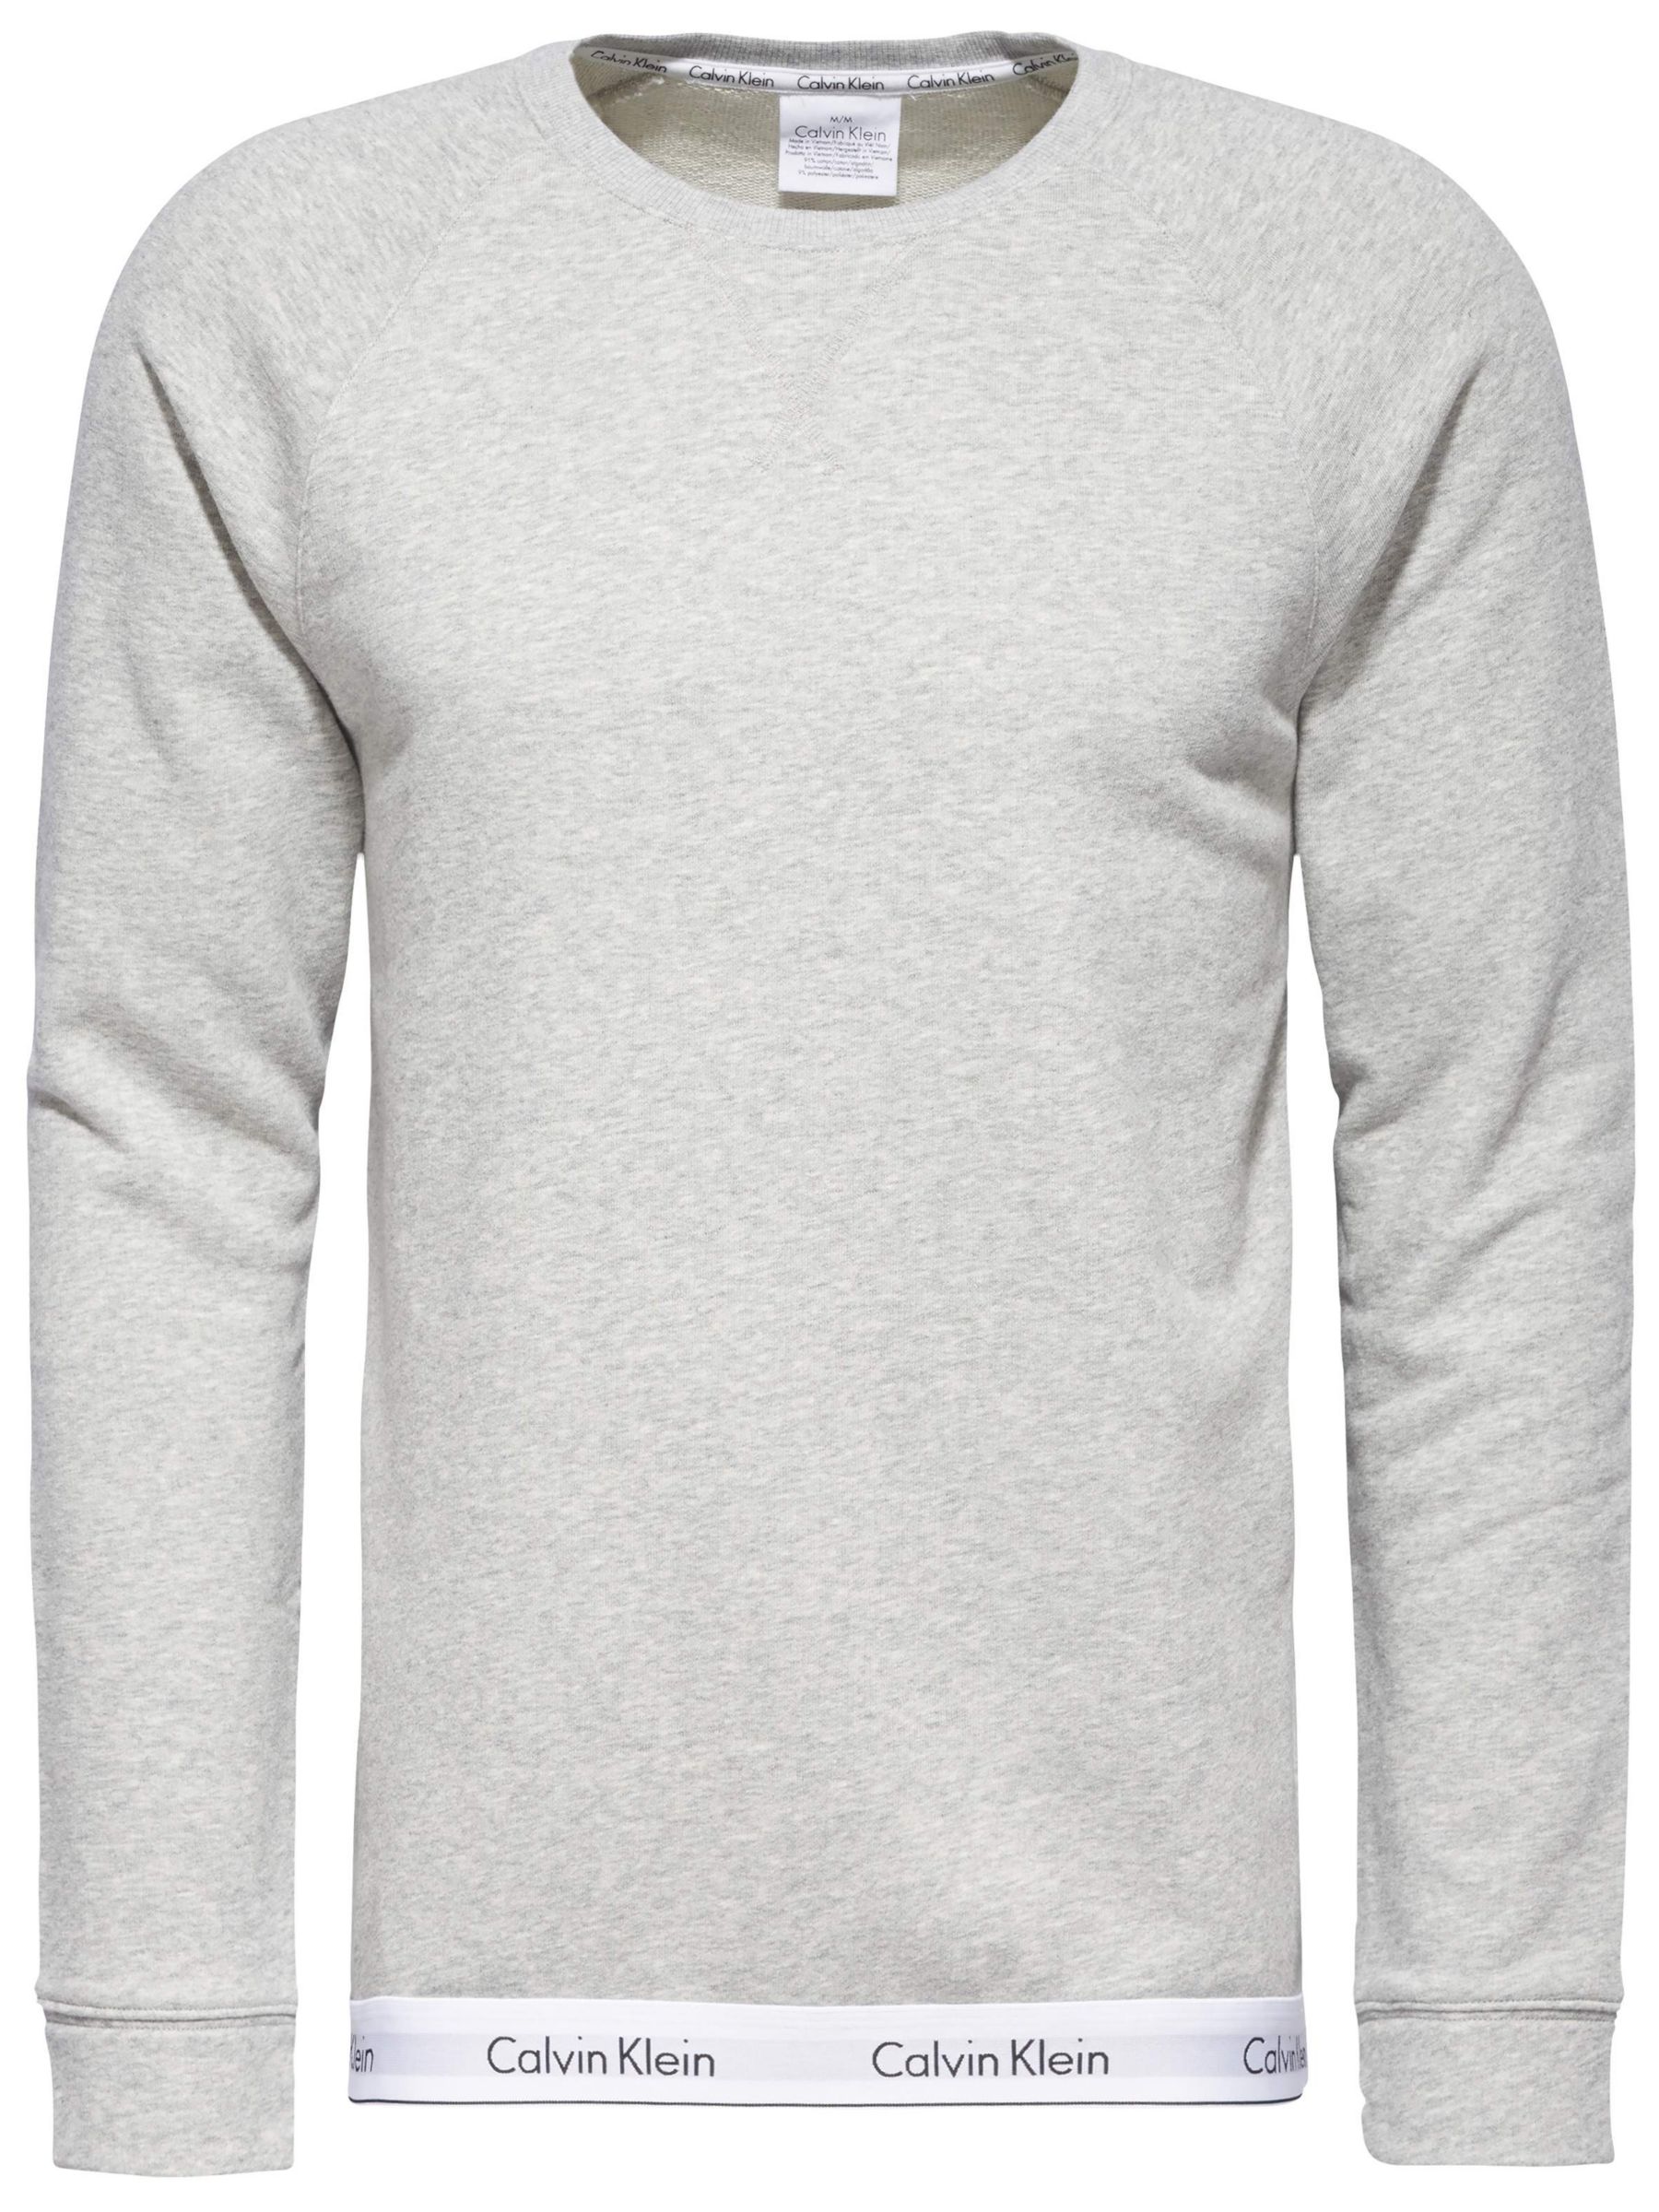 grey calvin klein sweater